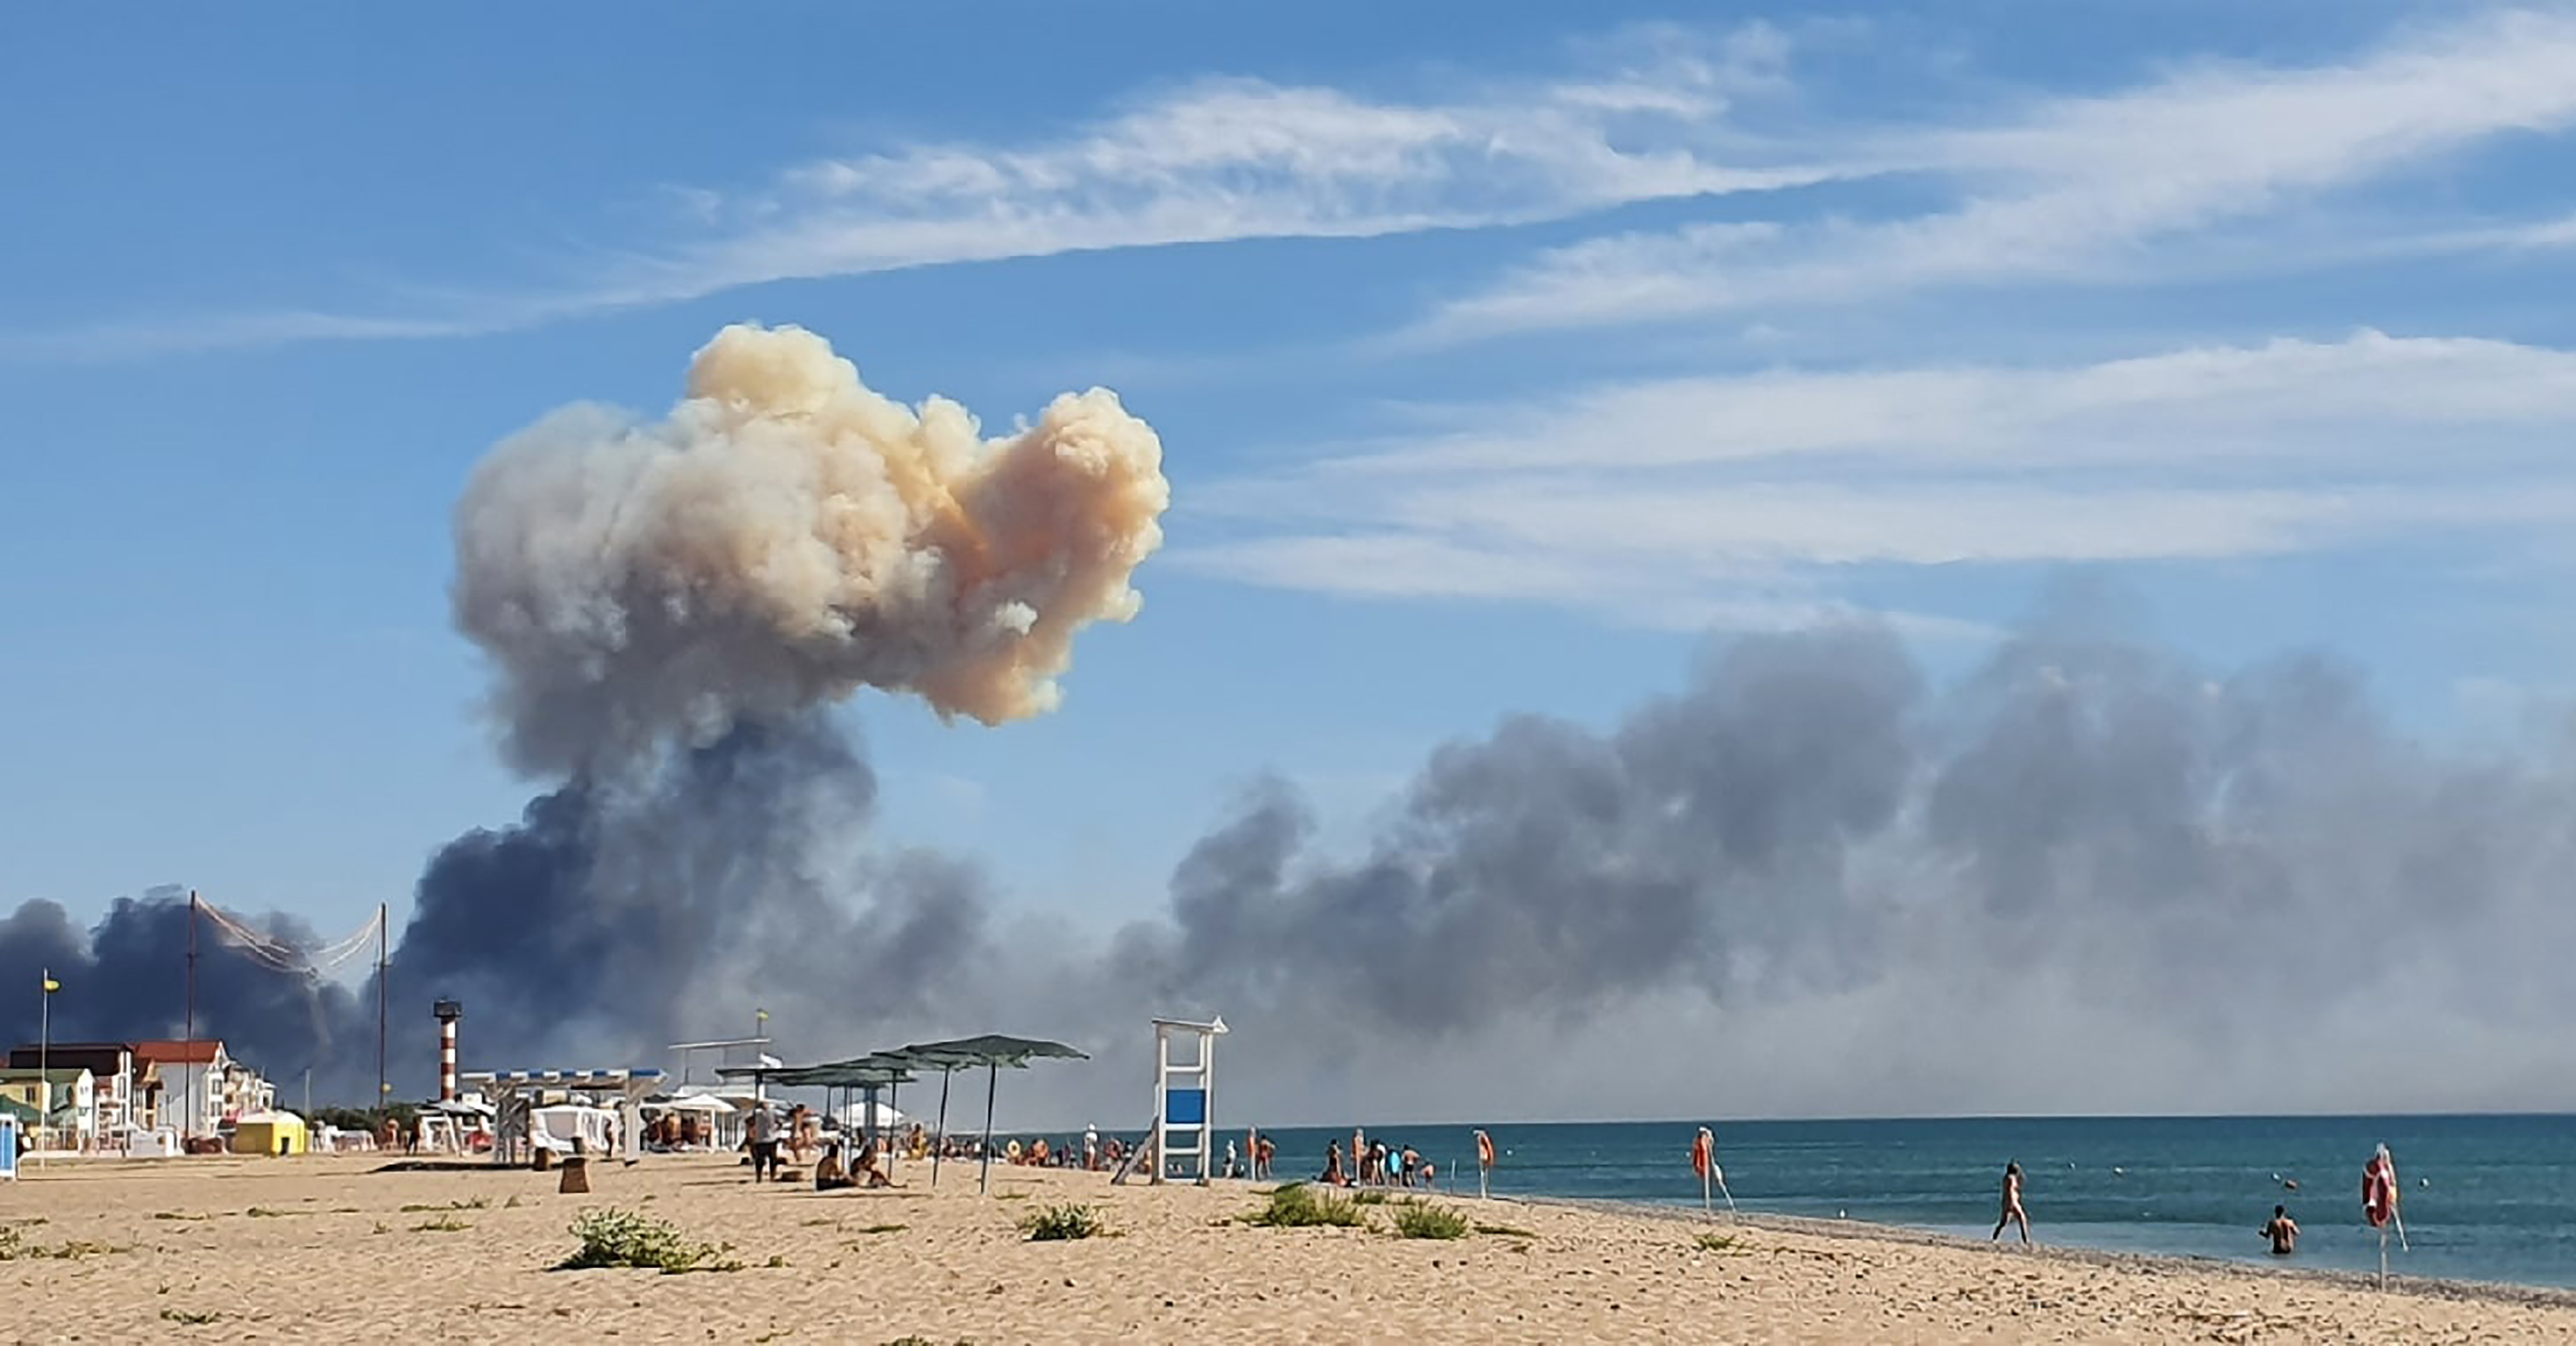 El humo que se eleva se puede ver desde la playa de Saky después de que se escucharon explosiones desde la dirección de la base aérea militar rusa cerca de Novofedorivka, Crimea (CGU a través de AP)